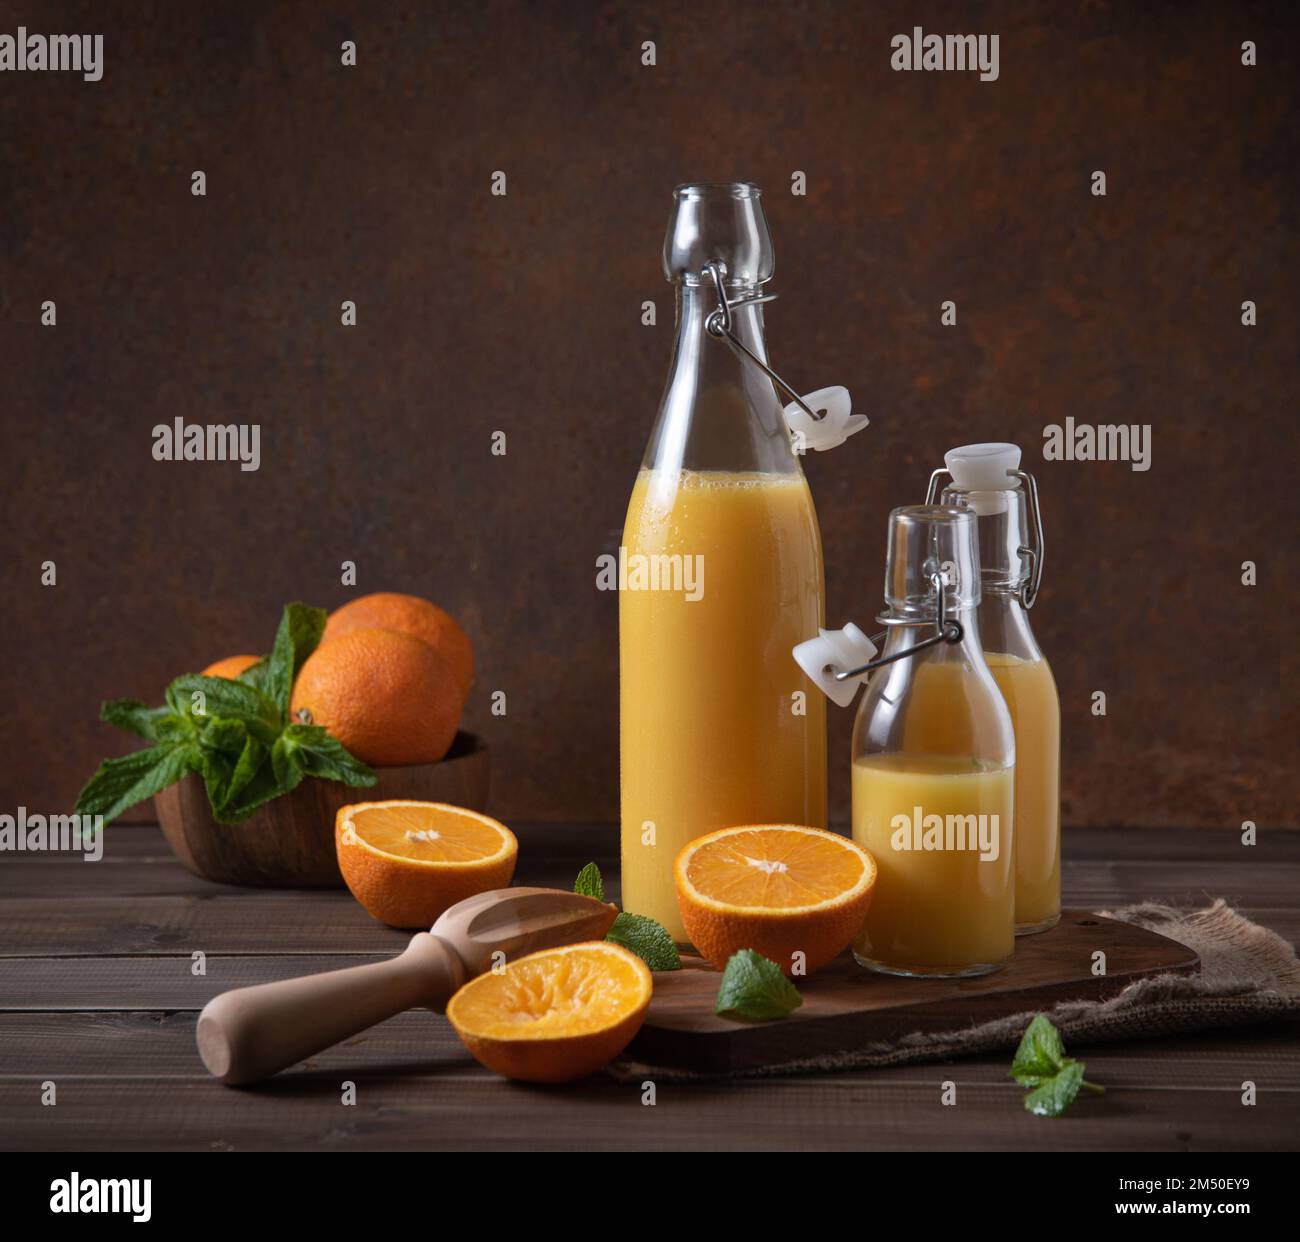 spremuta d'arancia fresca in tre bottiglie con agrumi sul tagliere e fondo di legno marrone. Concetto rustico. Immagine vista frontale Foto Stock